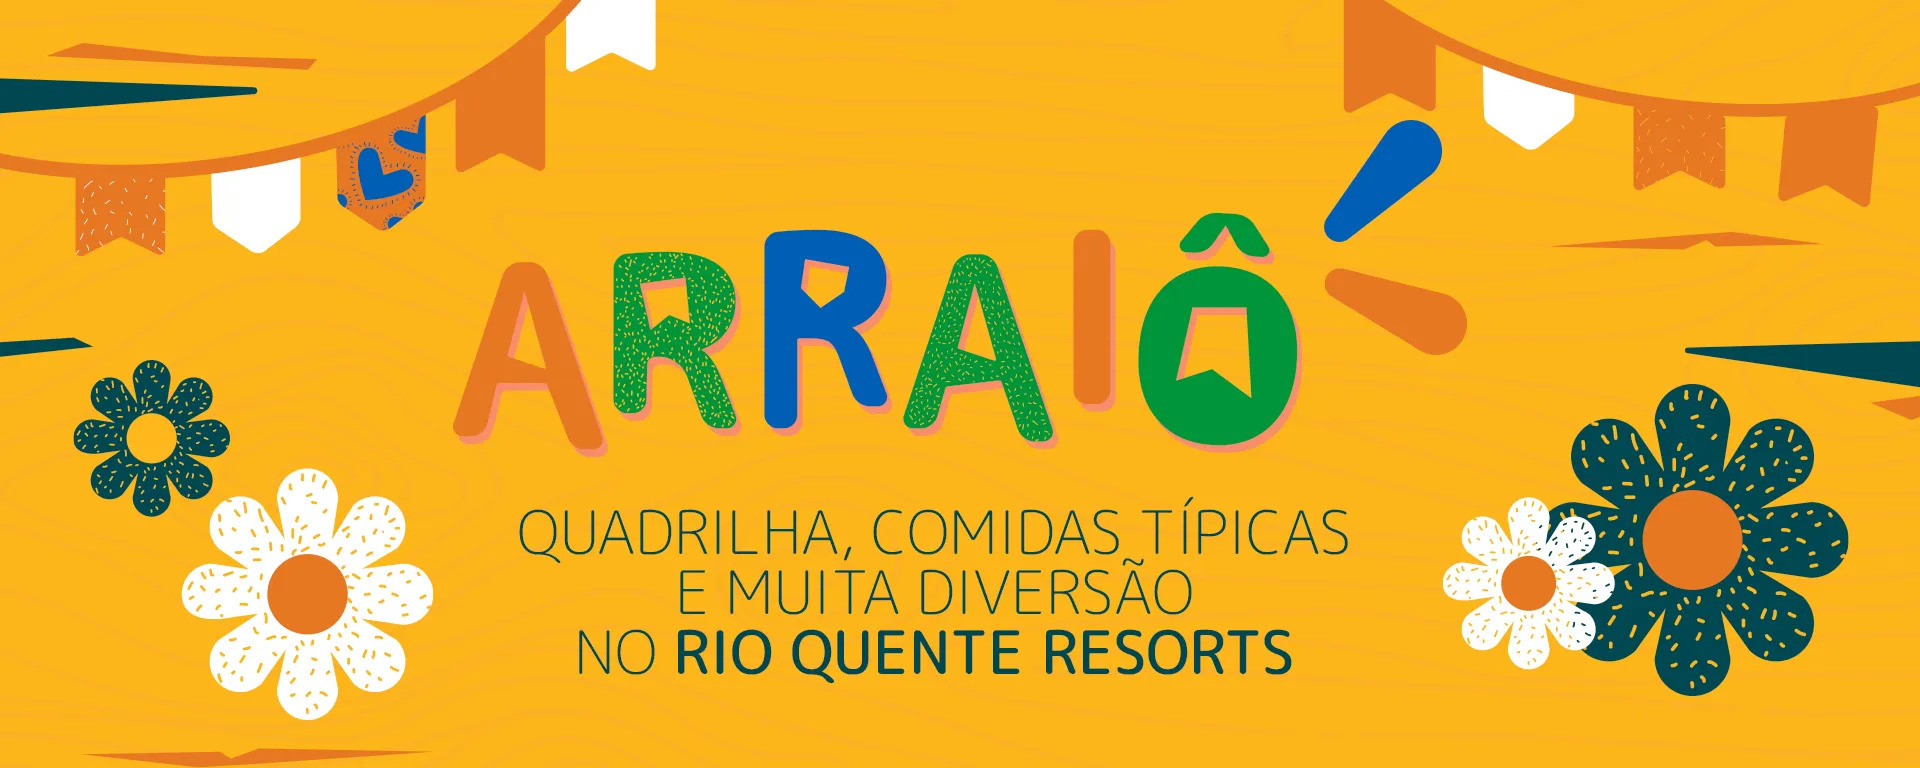 Arraiô - Rio Quente Resorts - Quadrilha, Comidas Típicas e Muita Diversão